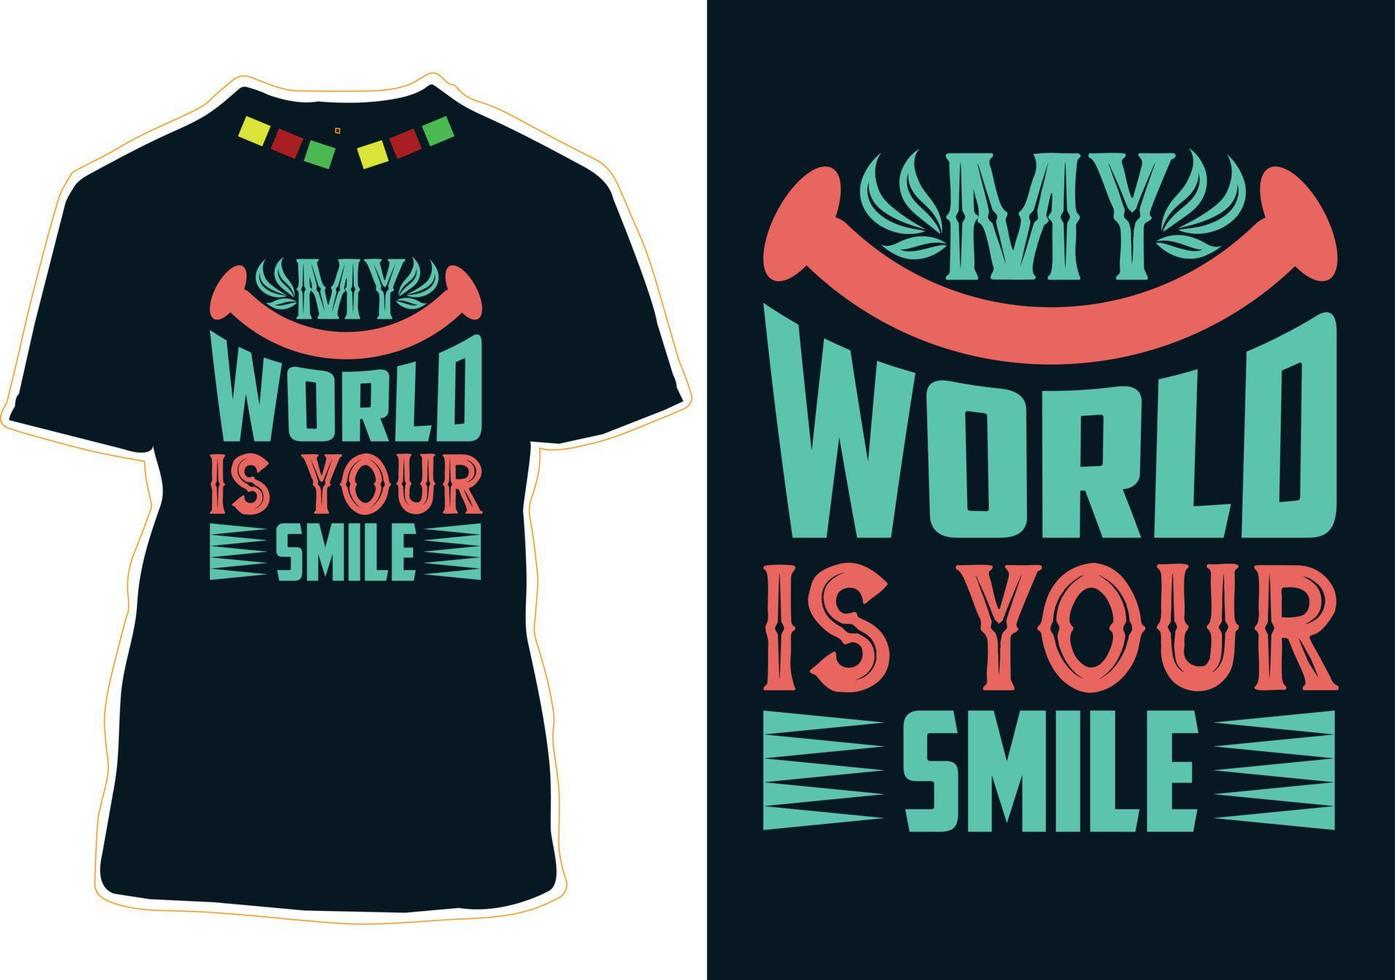 värld leende dag t-shirt design vektor